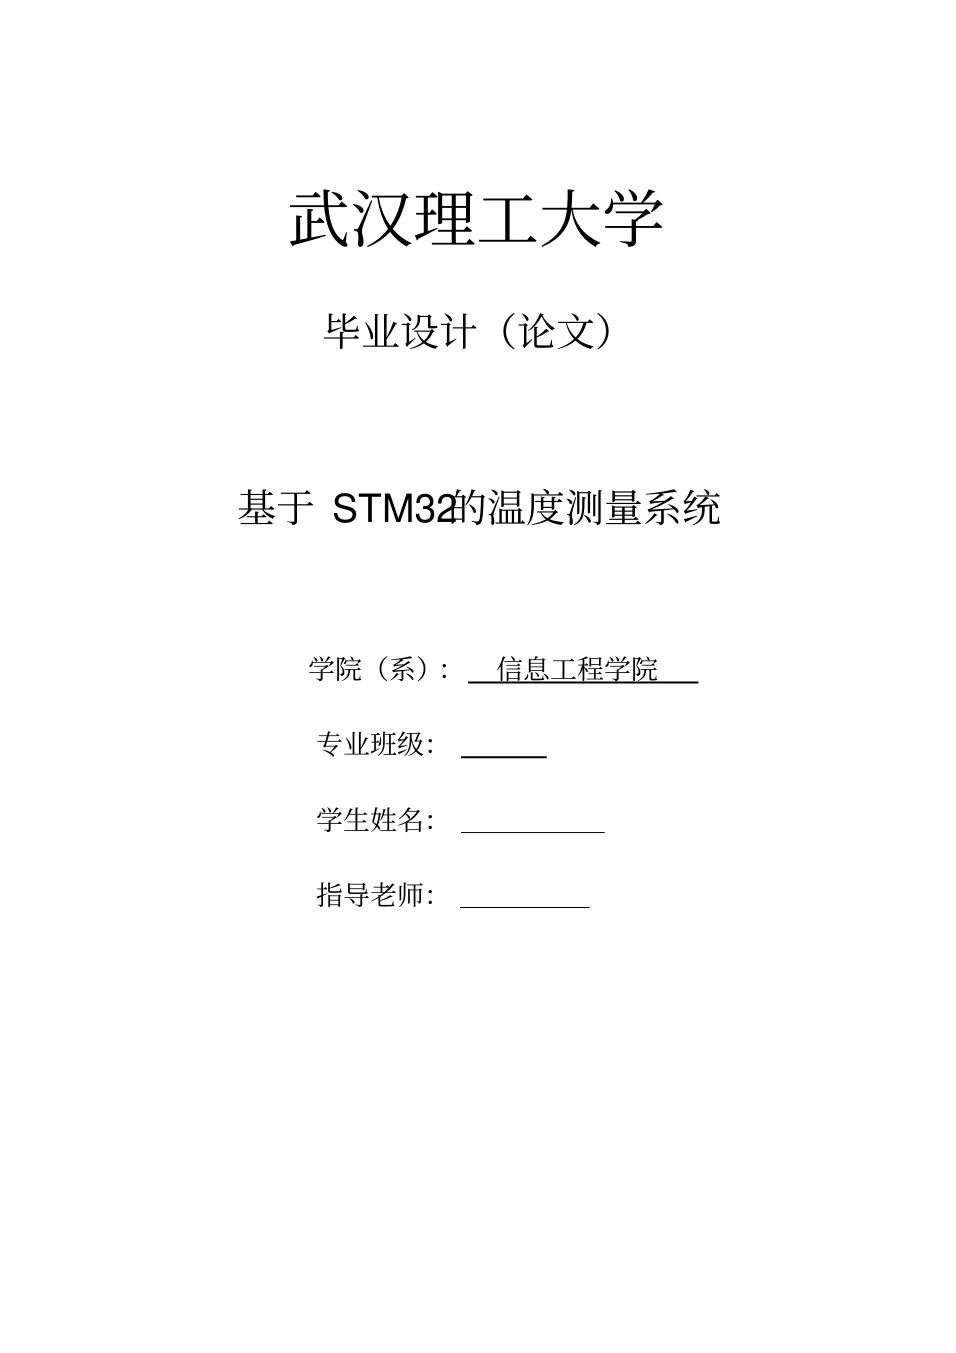 基于stm32的温度测量系统(20201215200312)_1.png